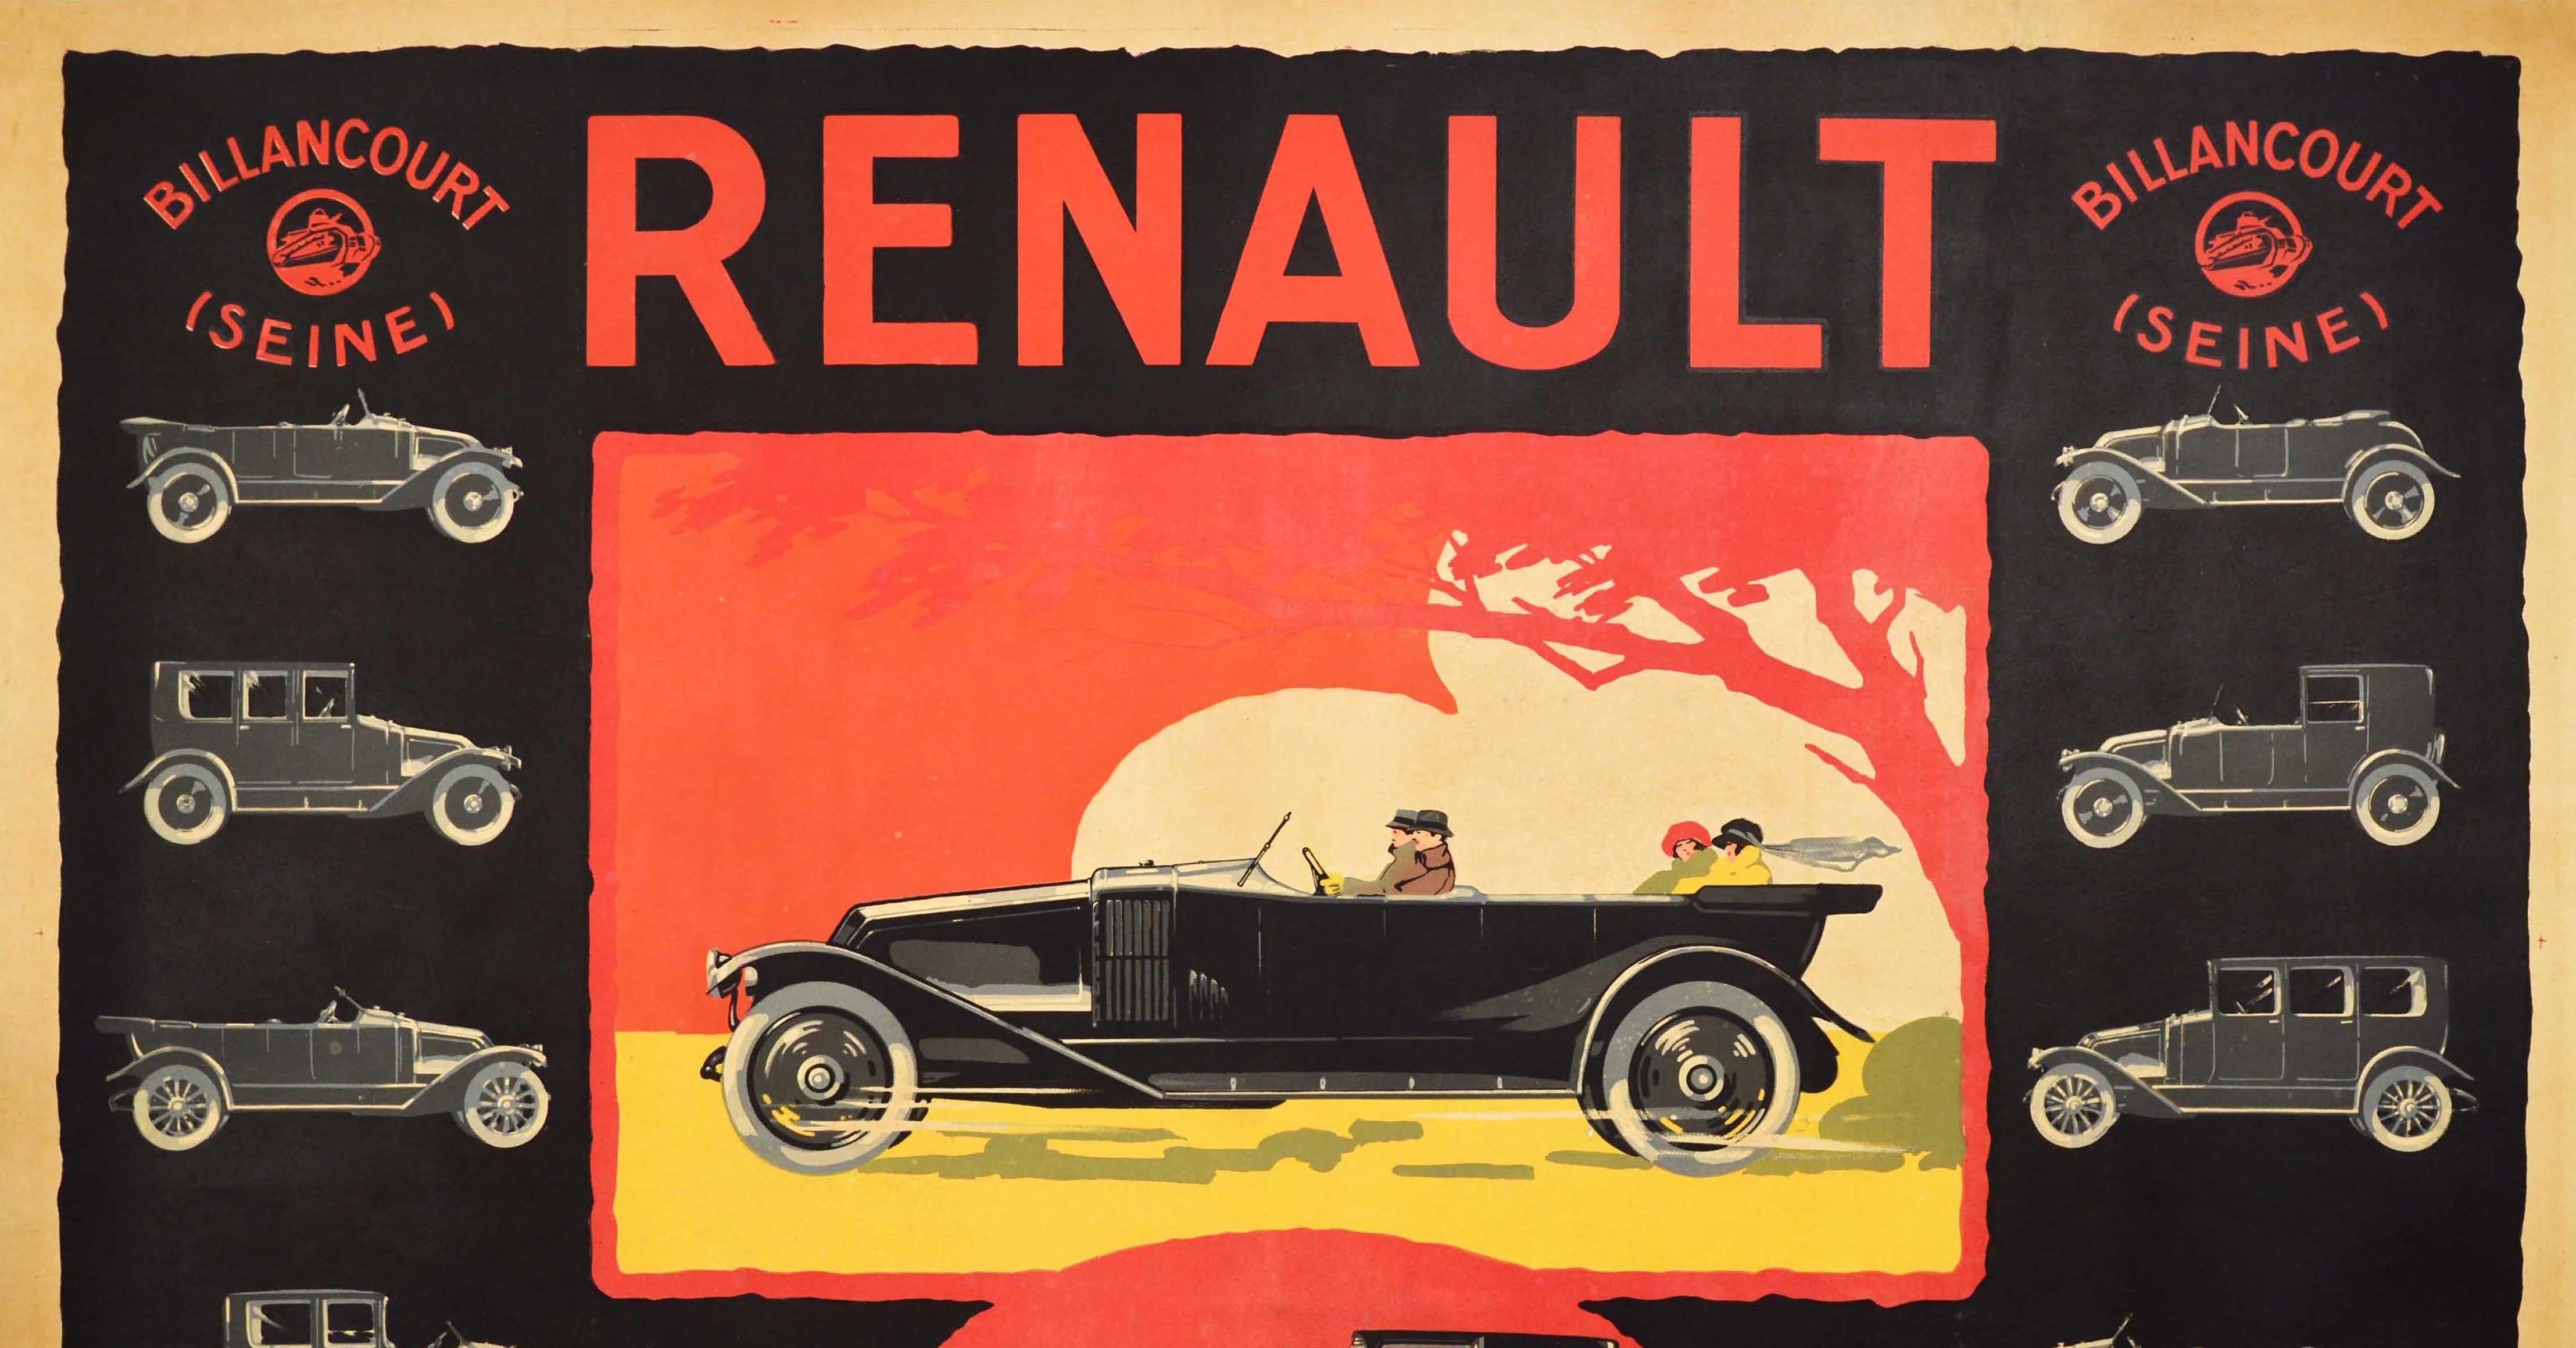 Affiche publicitaire ancienne pour le constructeur automobile français Renault, présentant un superbe dessin montrant différents modèles de voitures produites à l'usine de Billancourt (Seine) sur un fond sombre avec des images colorées de style Arte